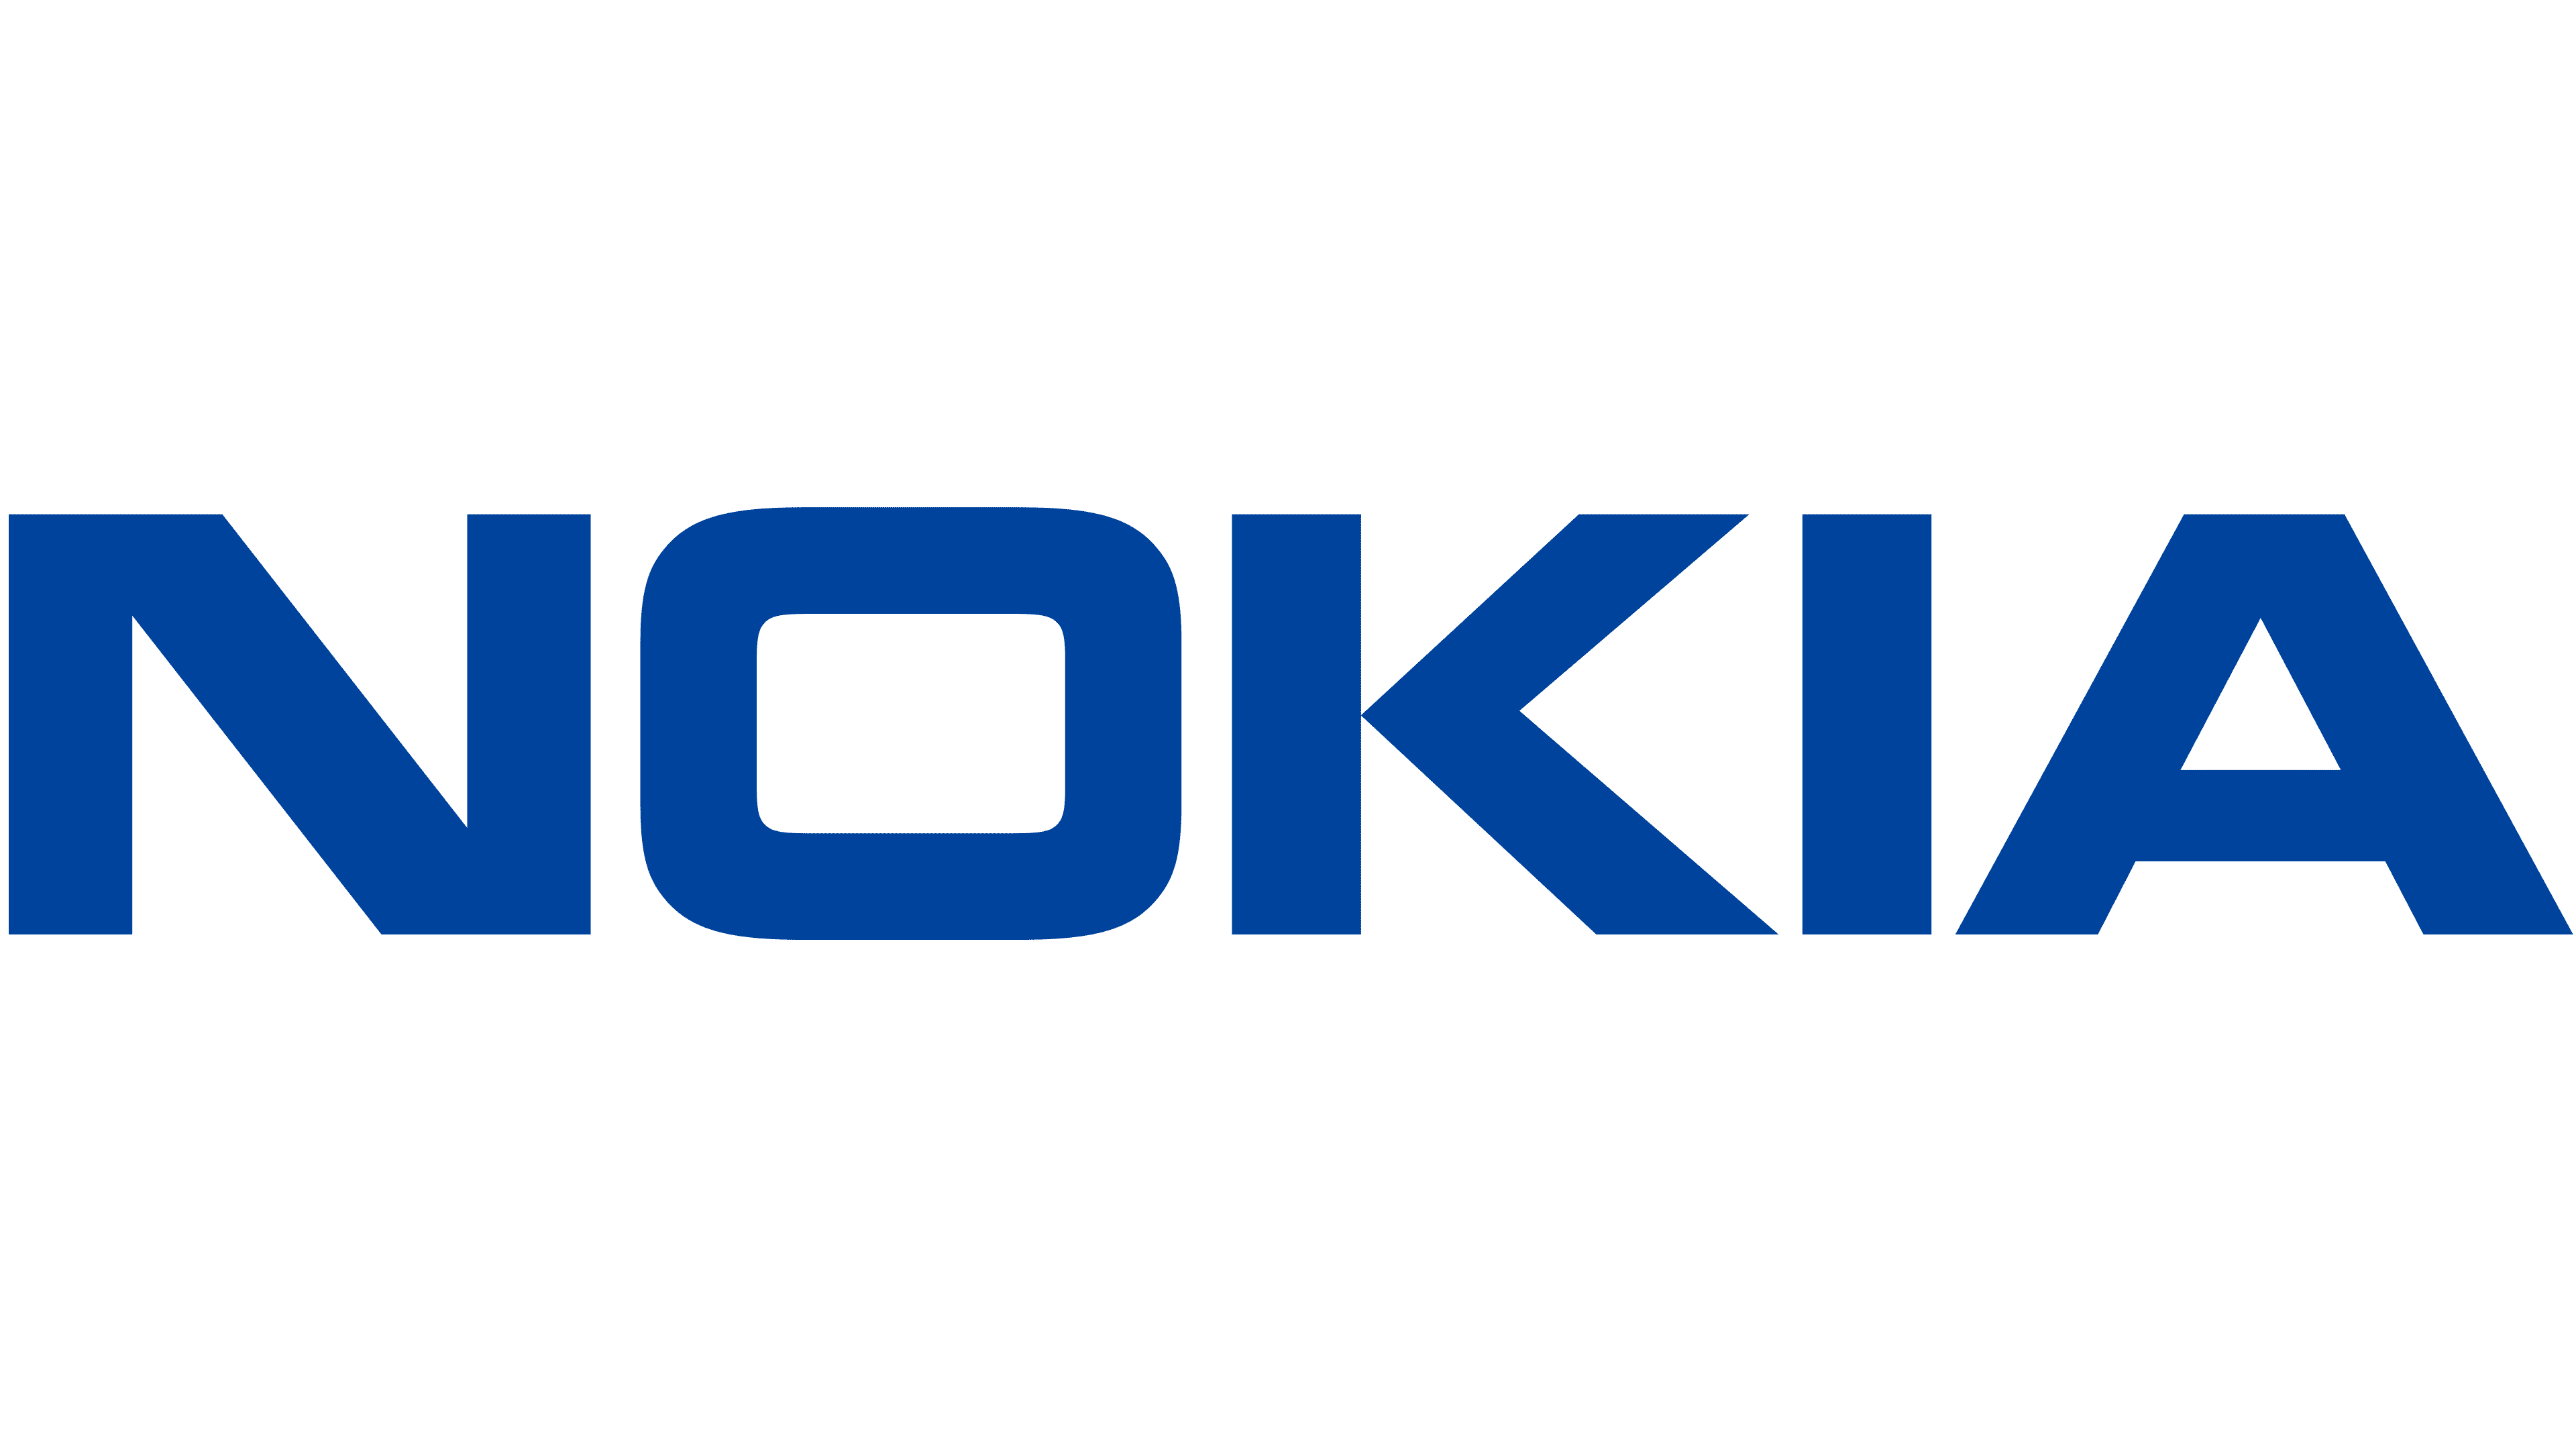 Nokia Malaysia official